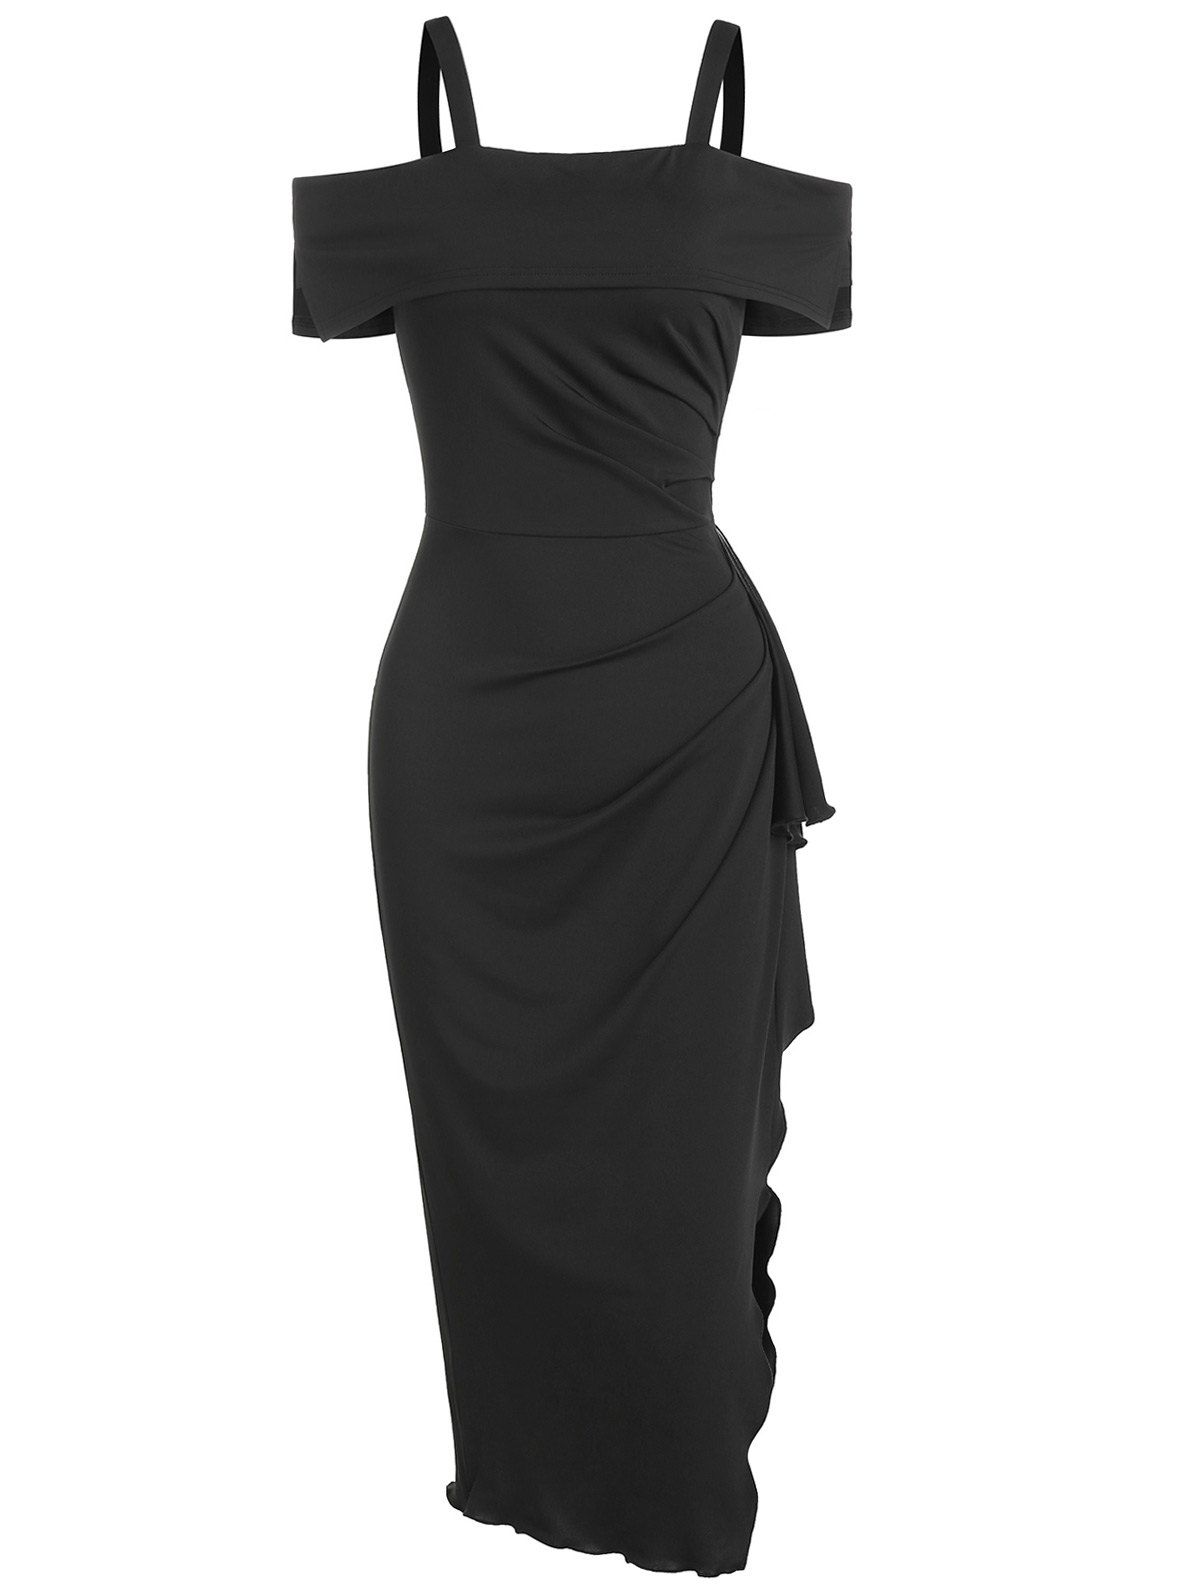 Open Shoulder Ruched Side Slit Bodycon Dress - BLACK L